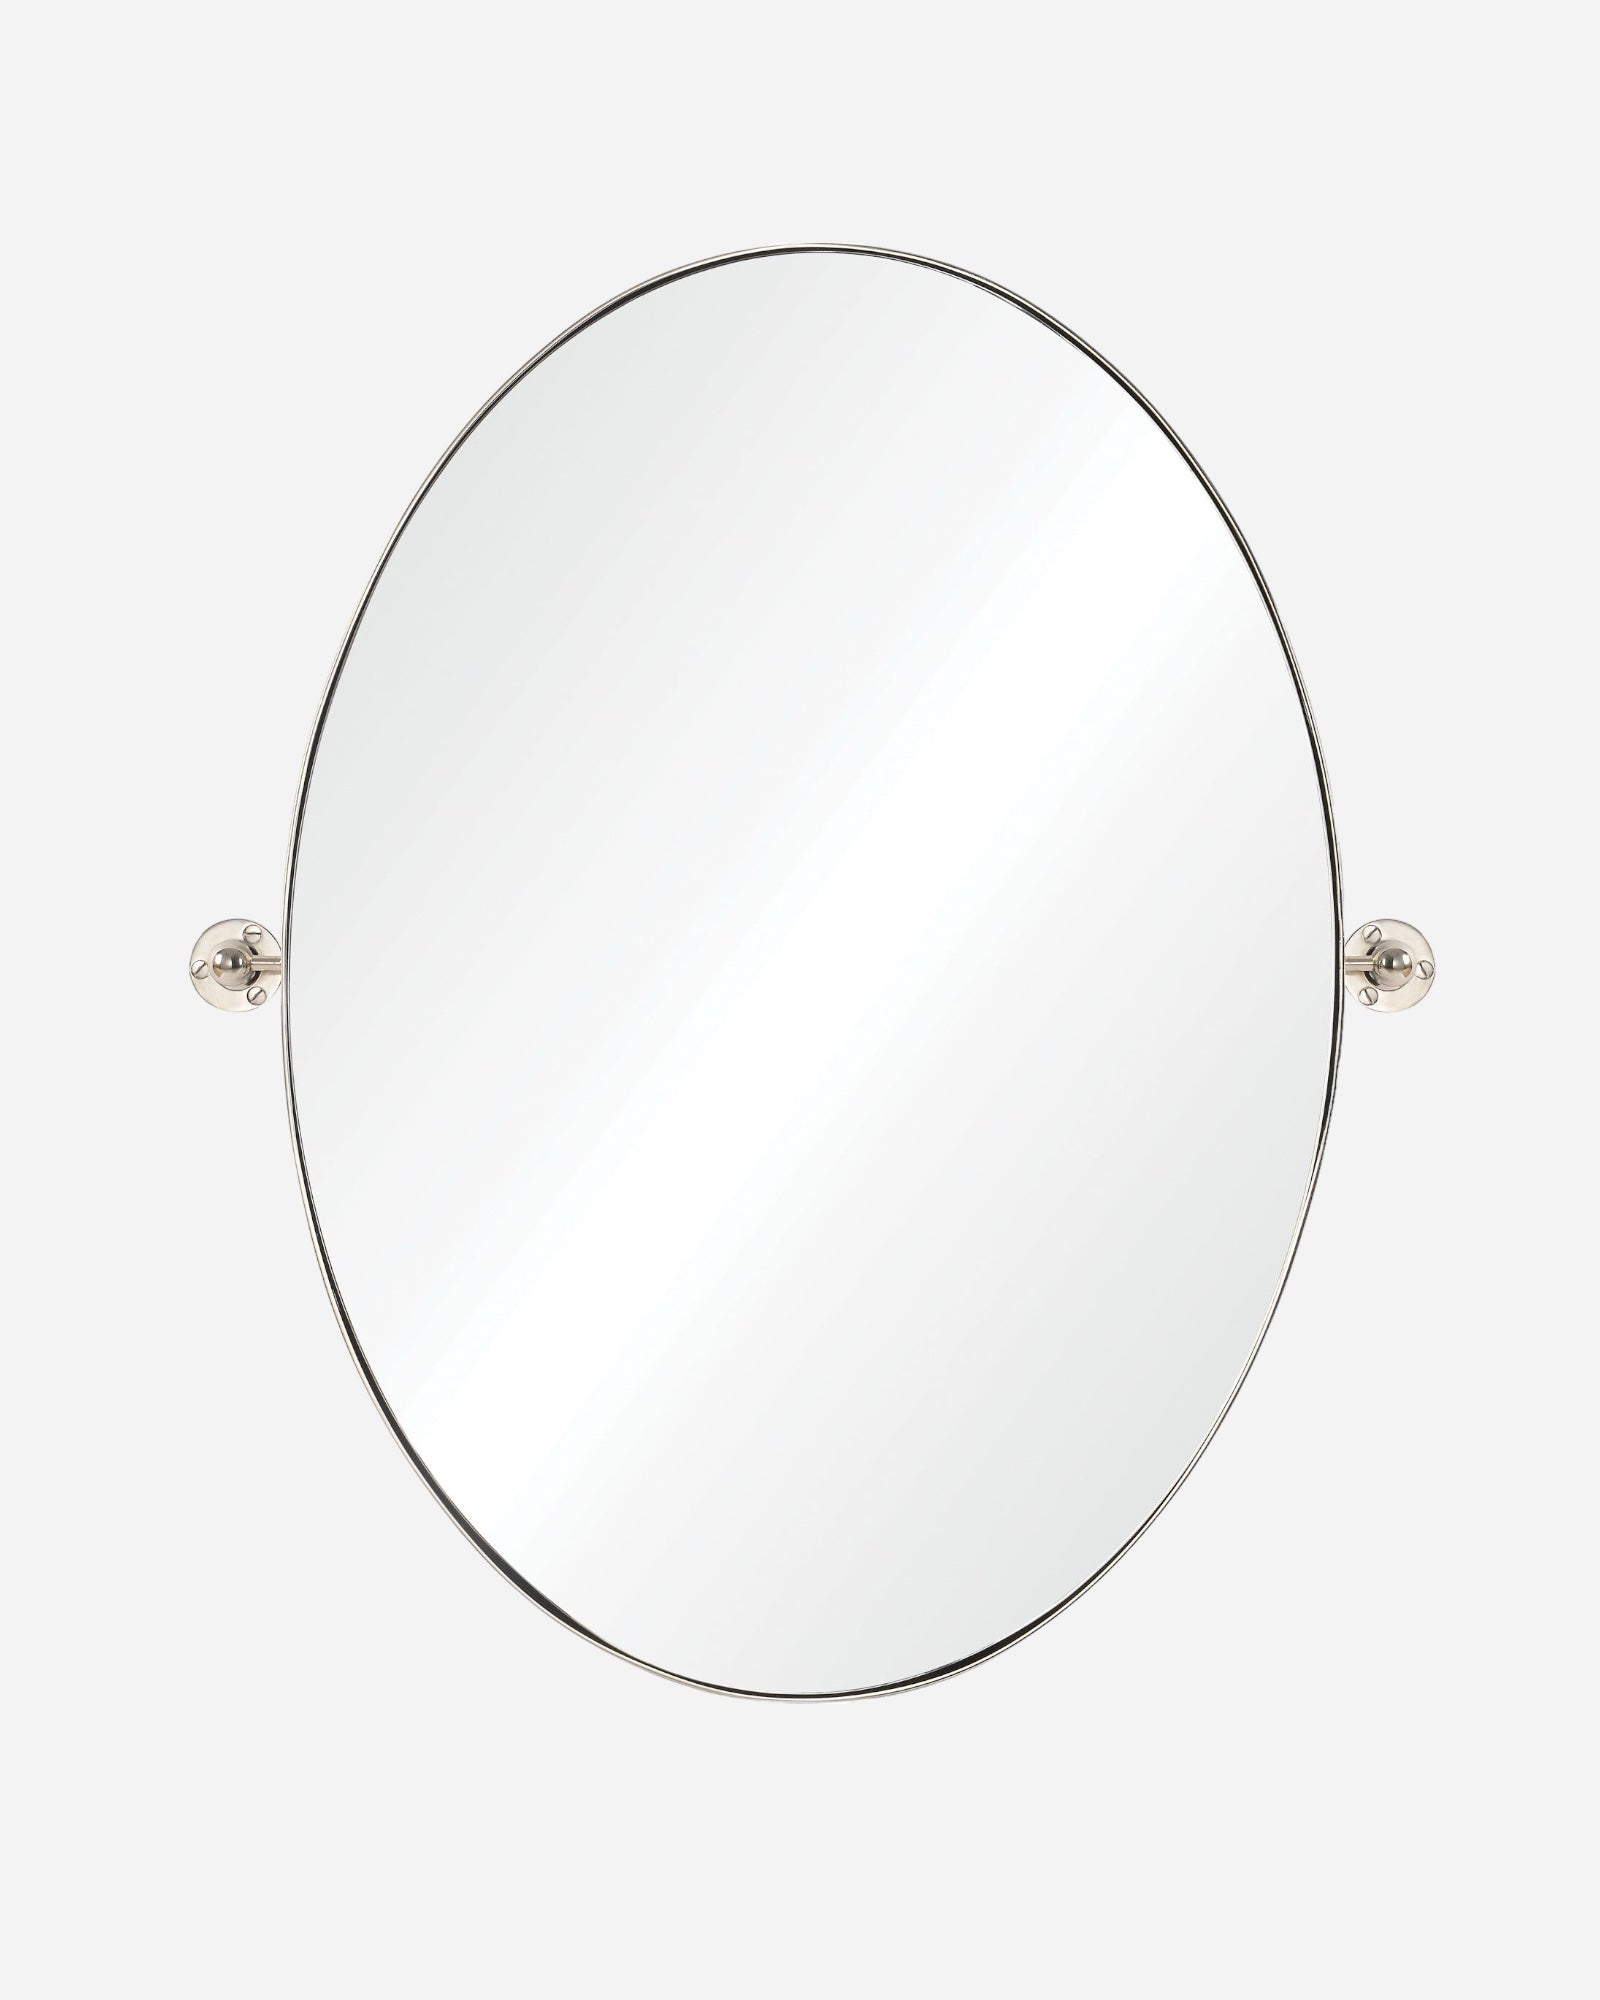 AZUR Miroir - Maison Olive - Miroirs